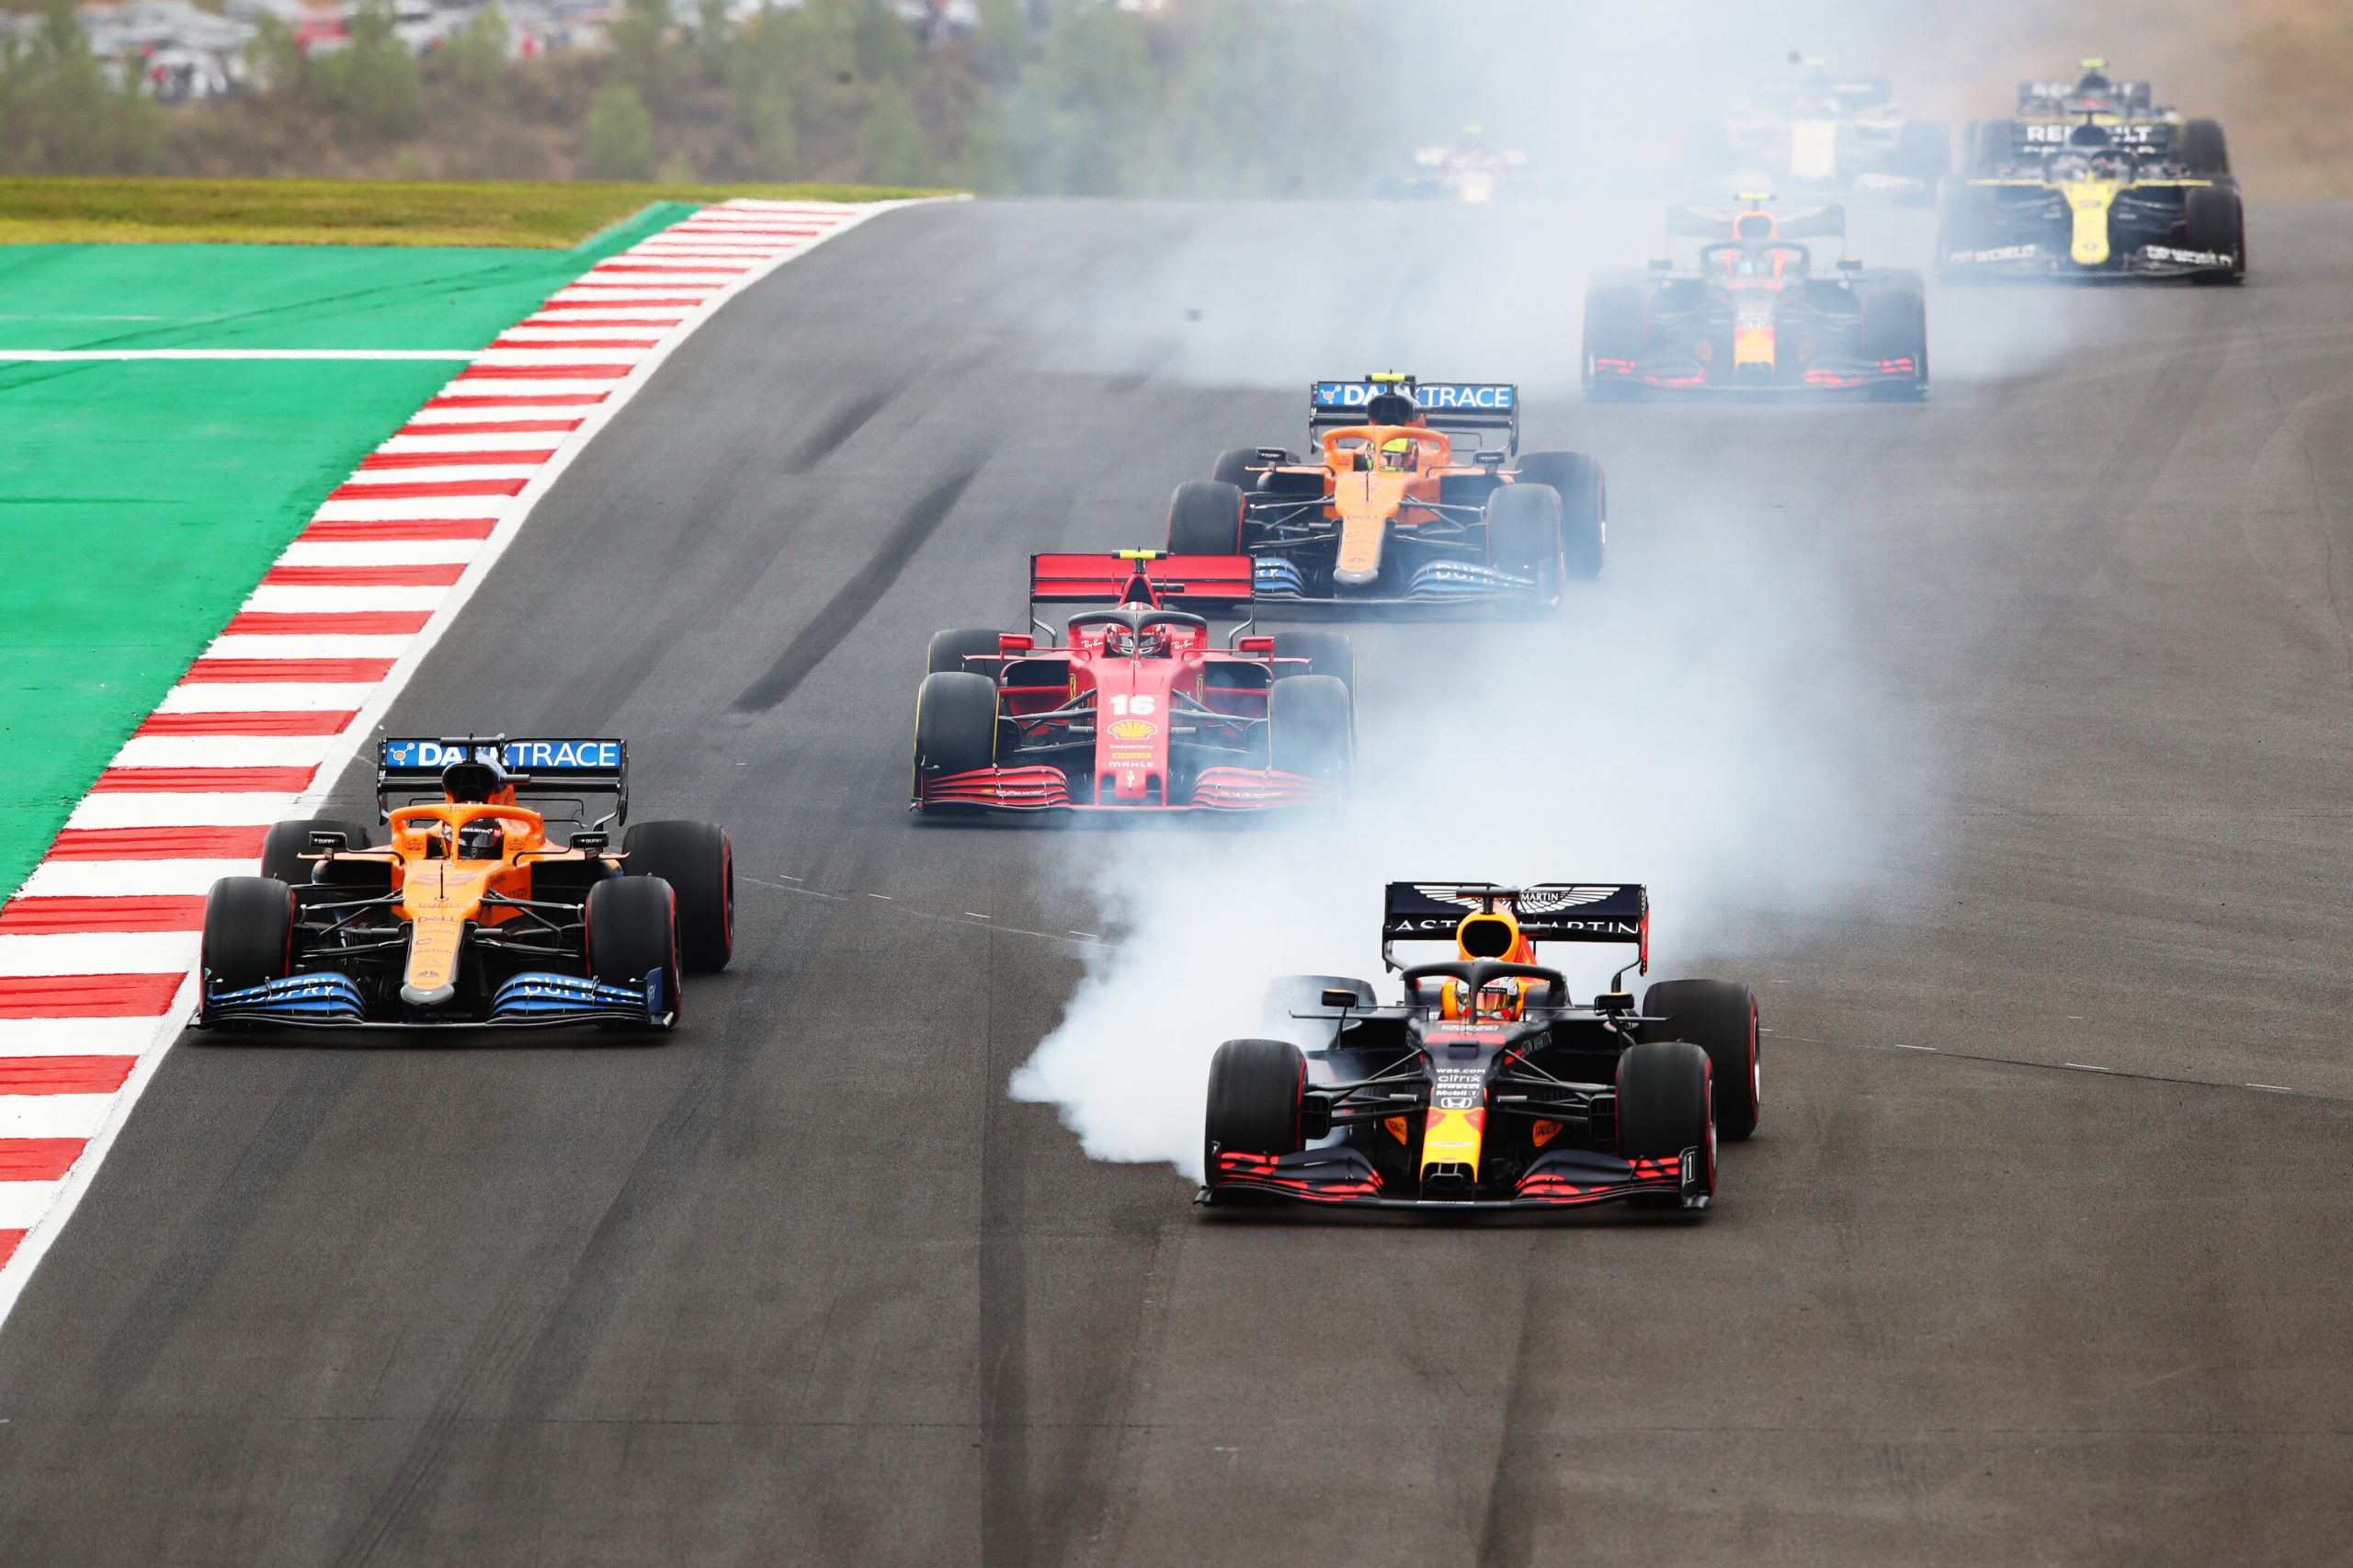 Portuguese Grand Prix 2020